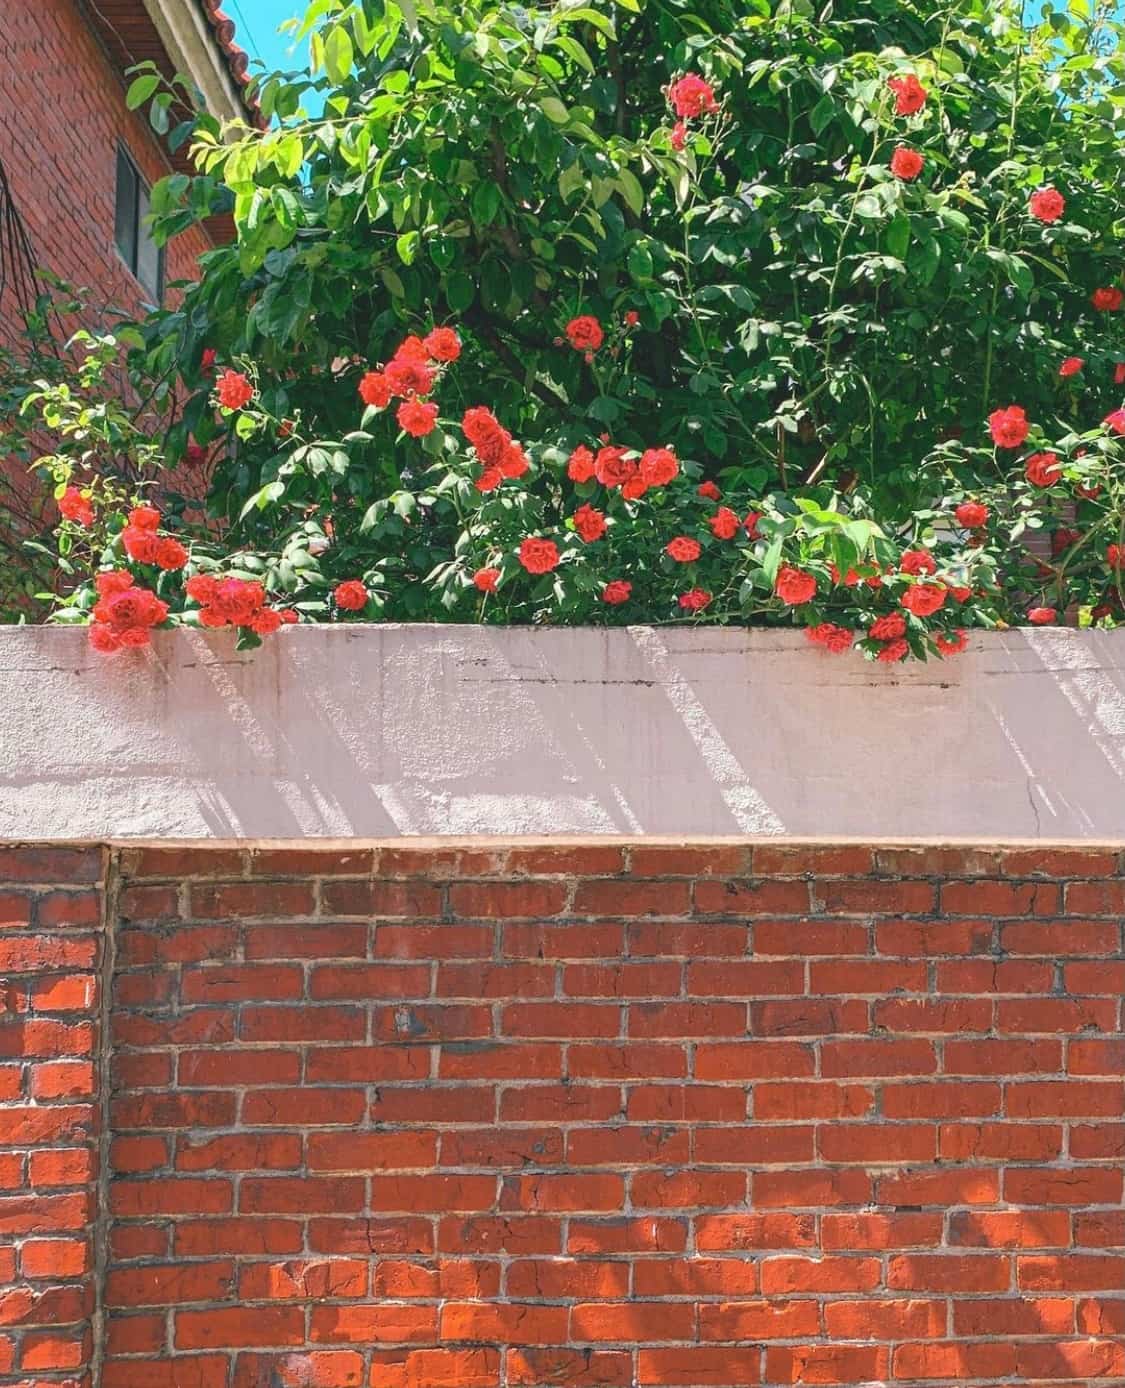 街边伸出墙外的玫瑰花丛 朋友圈唯美鲜花配图_8